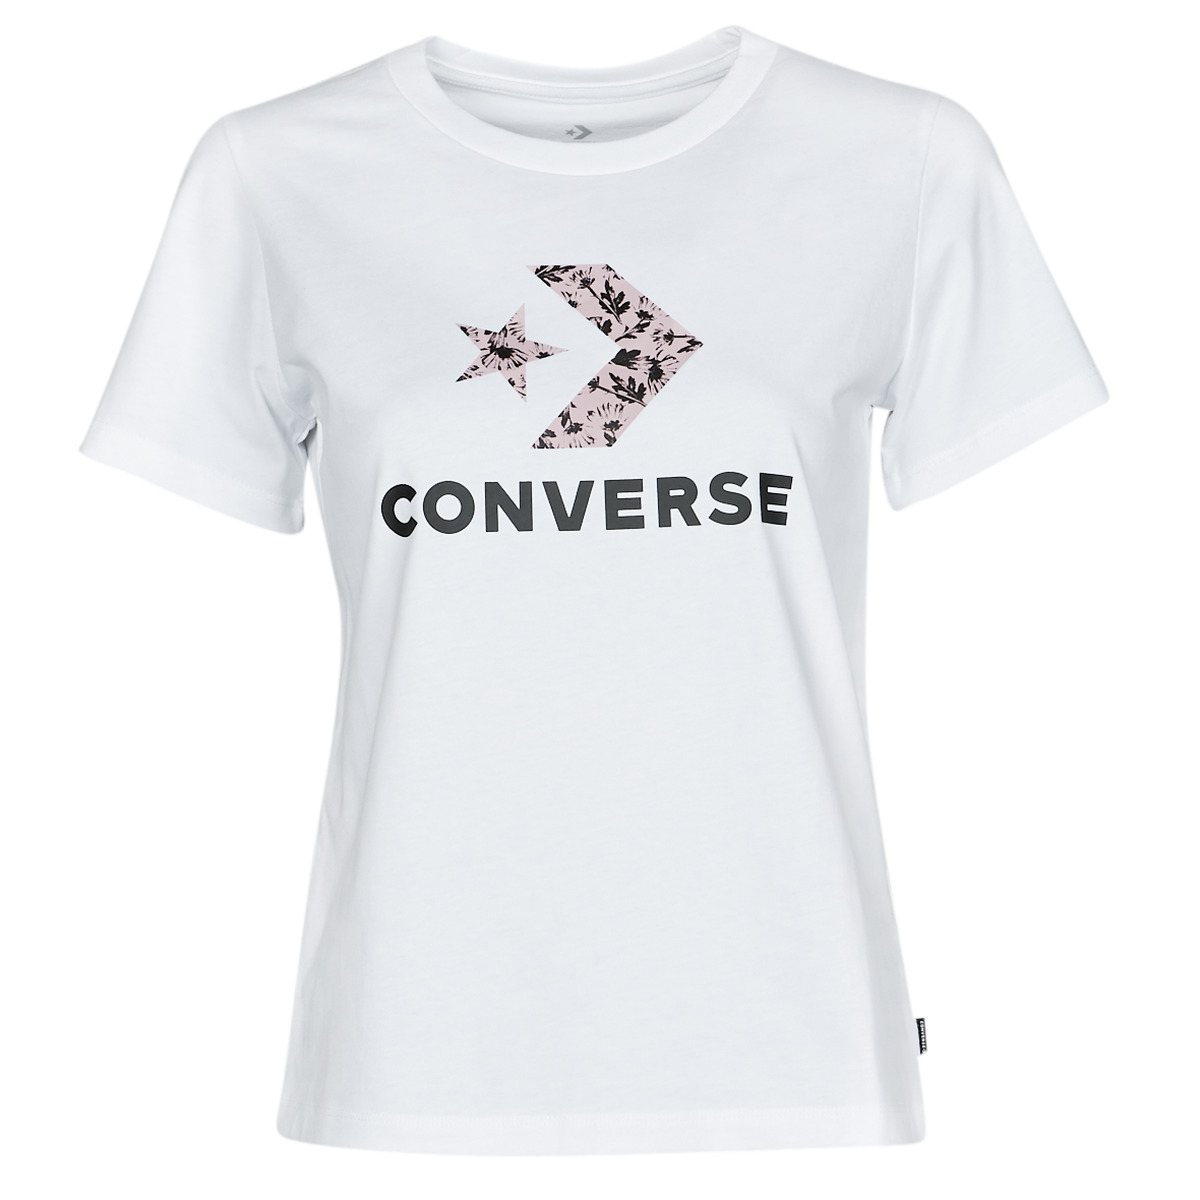 Textil Ženy Trička s krátkým rukávem Converse STAR CHEVRON HYBRID FLOWER INFILL CLASSIC TEE Bílá